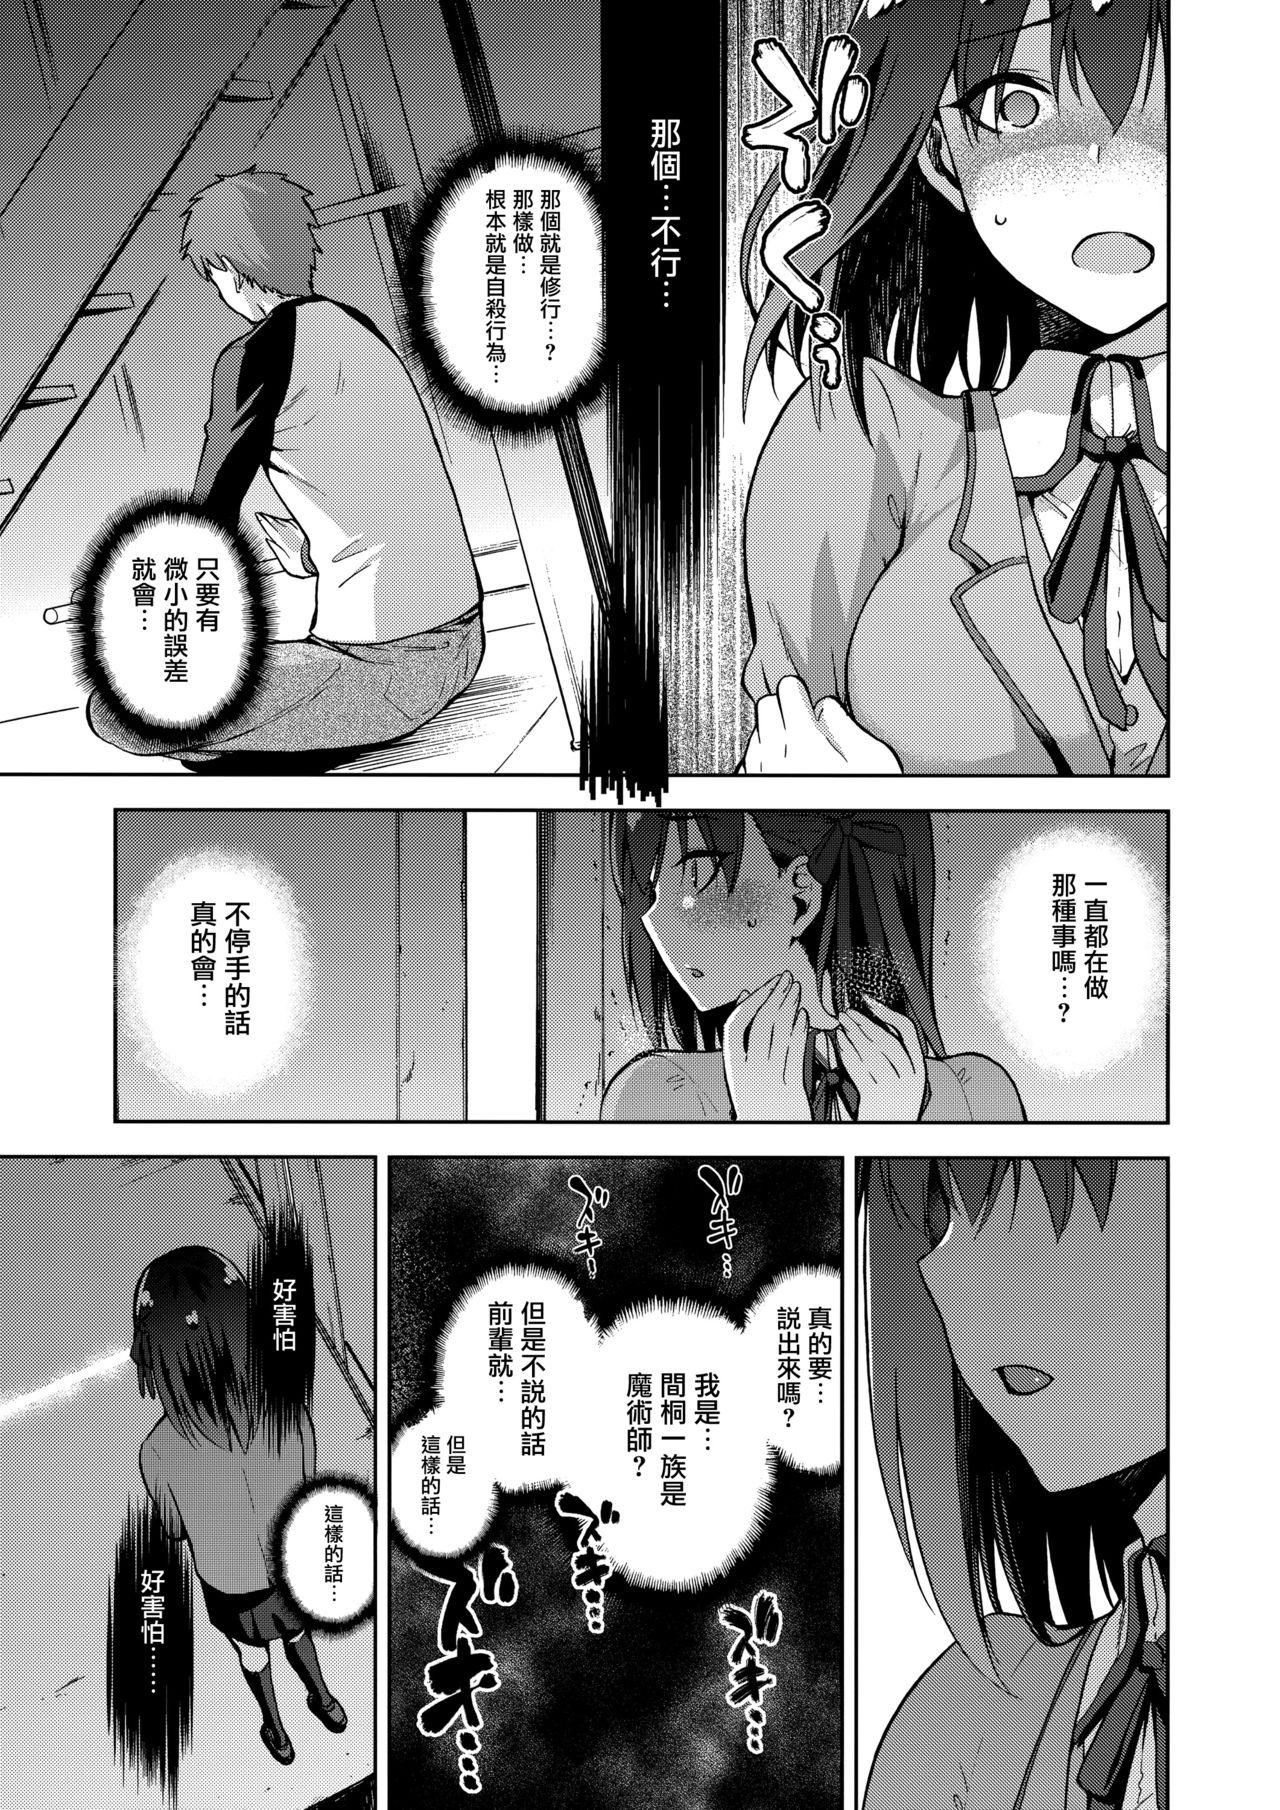 Abuse Sakura Ori Ni - Fate stay night 18 Year Old Porn - Page 13